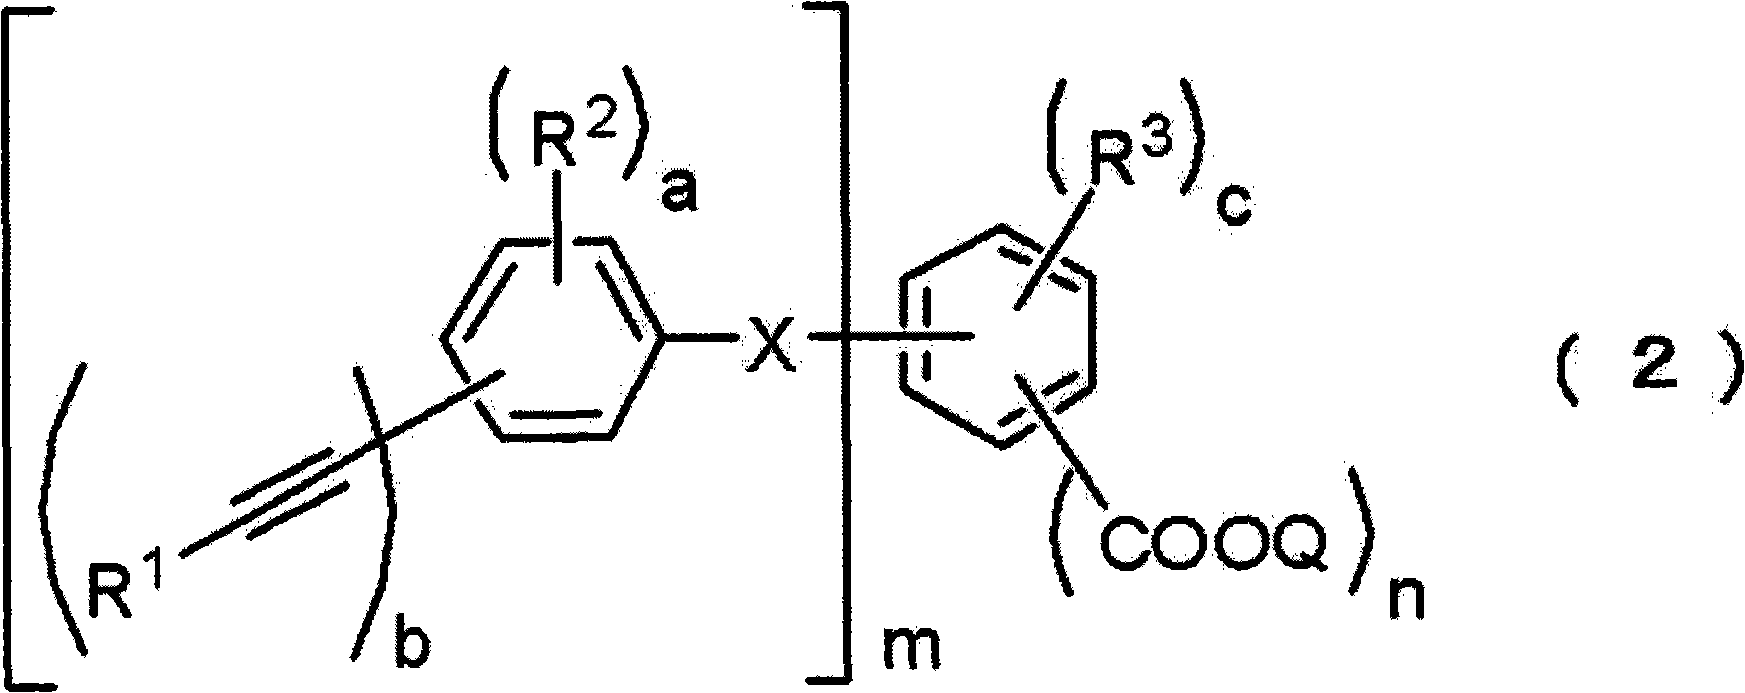 Acetylene compound